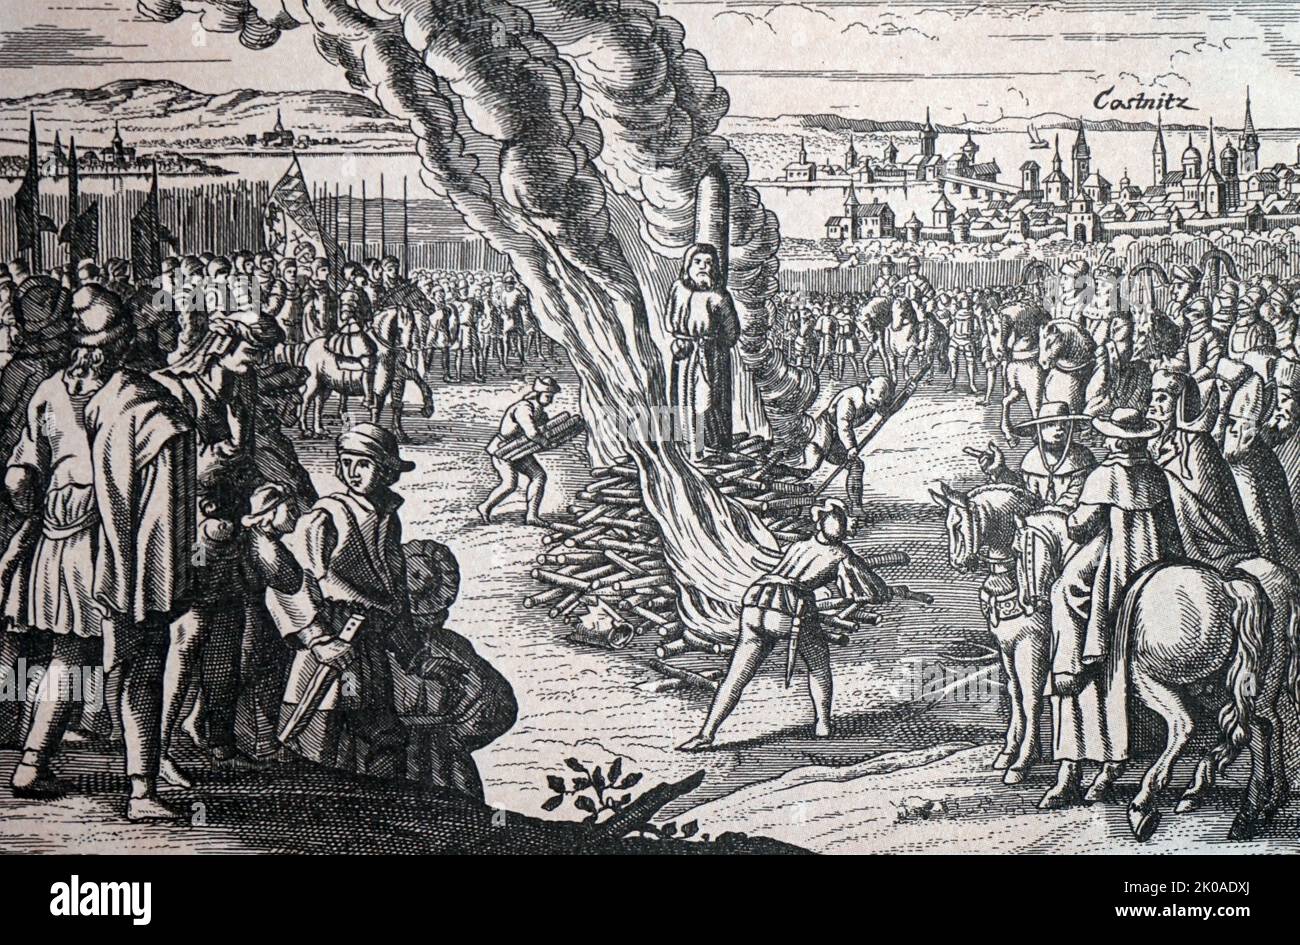 Die Verbrennung des Mitarbeiters von Jan Hus, Hieronymus von Prag, in der Stadt Constanta am 30. Mai 1416. Mittelalterliche Gravur Stockfoto